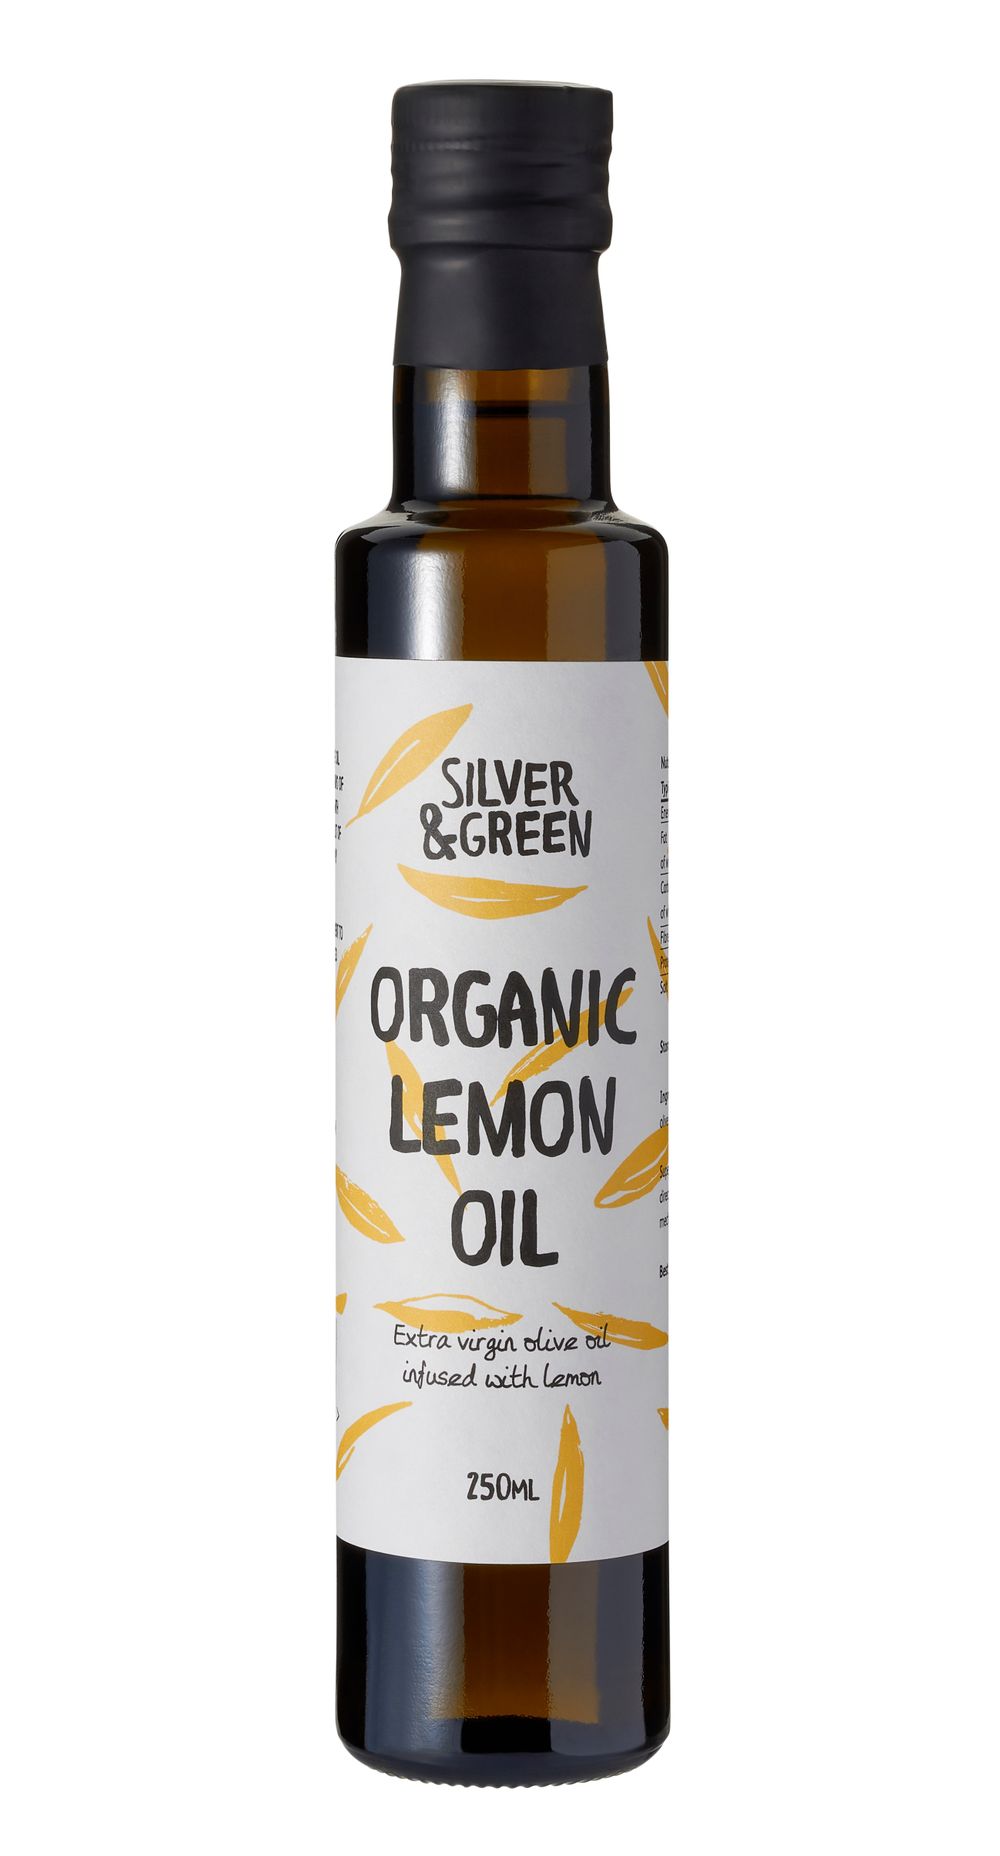 Organic Lemon Oil